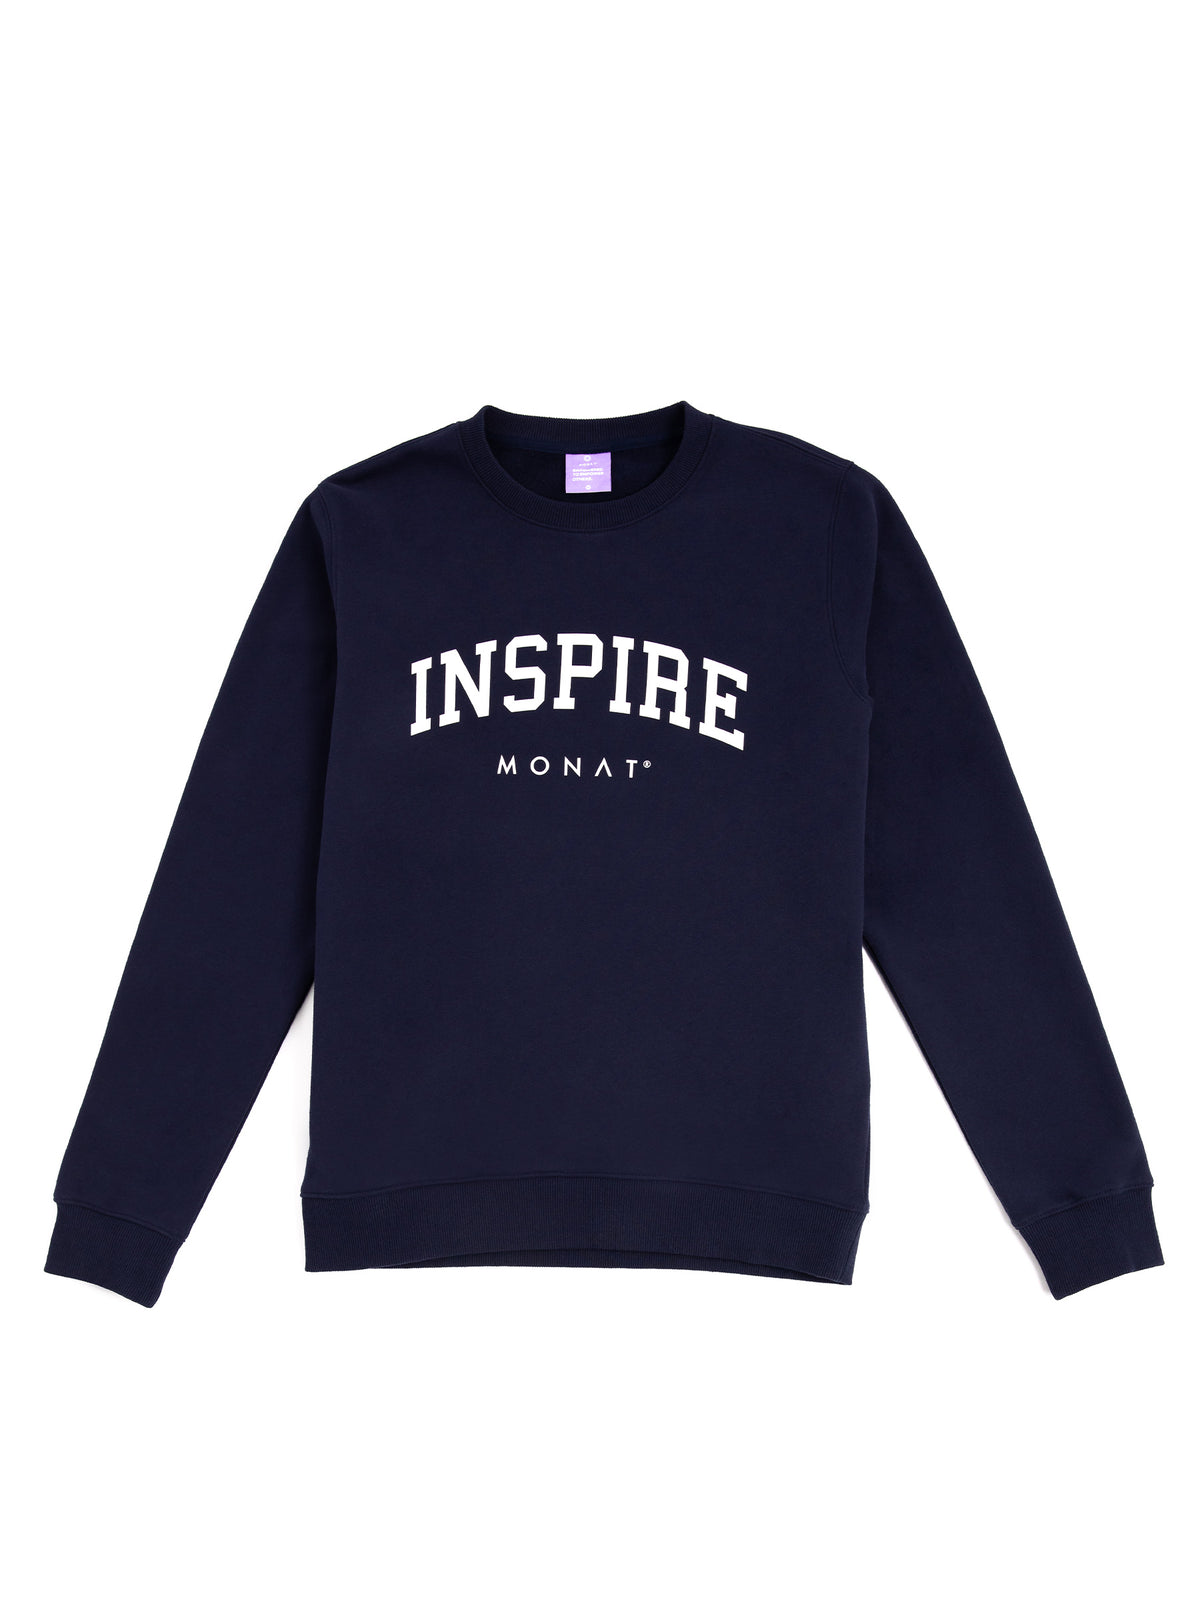 MONAT Inspire Sweatshirt- Navy